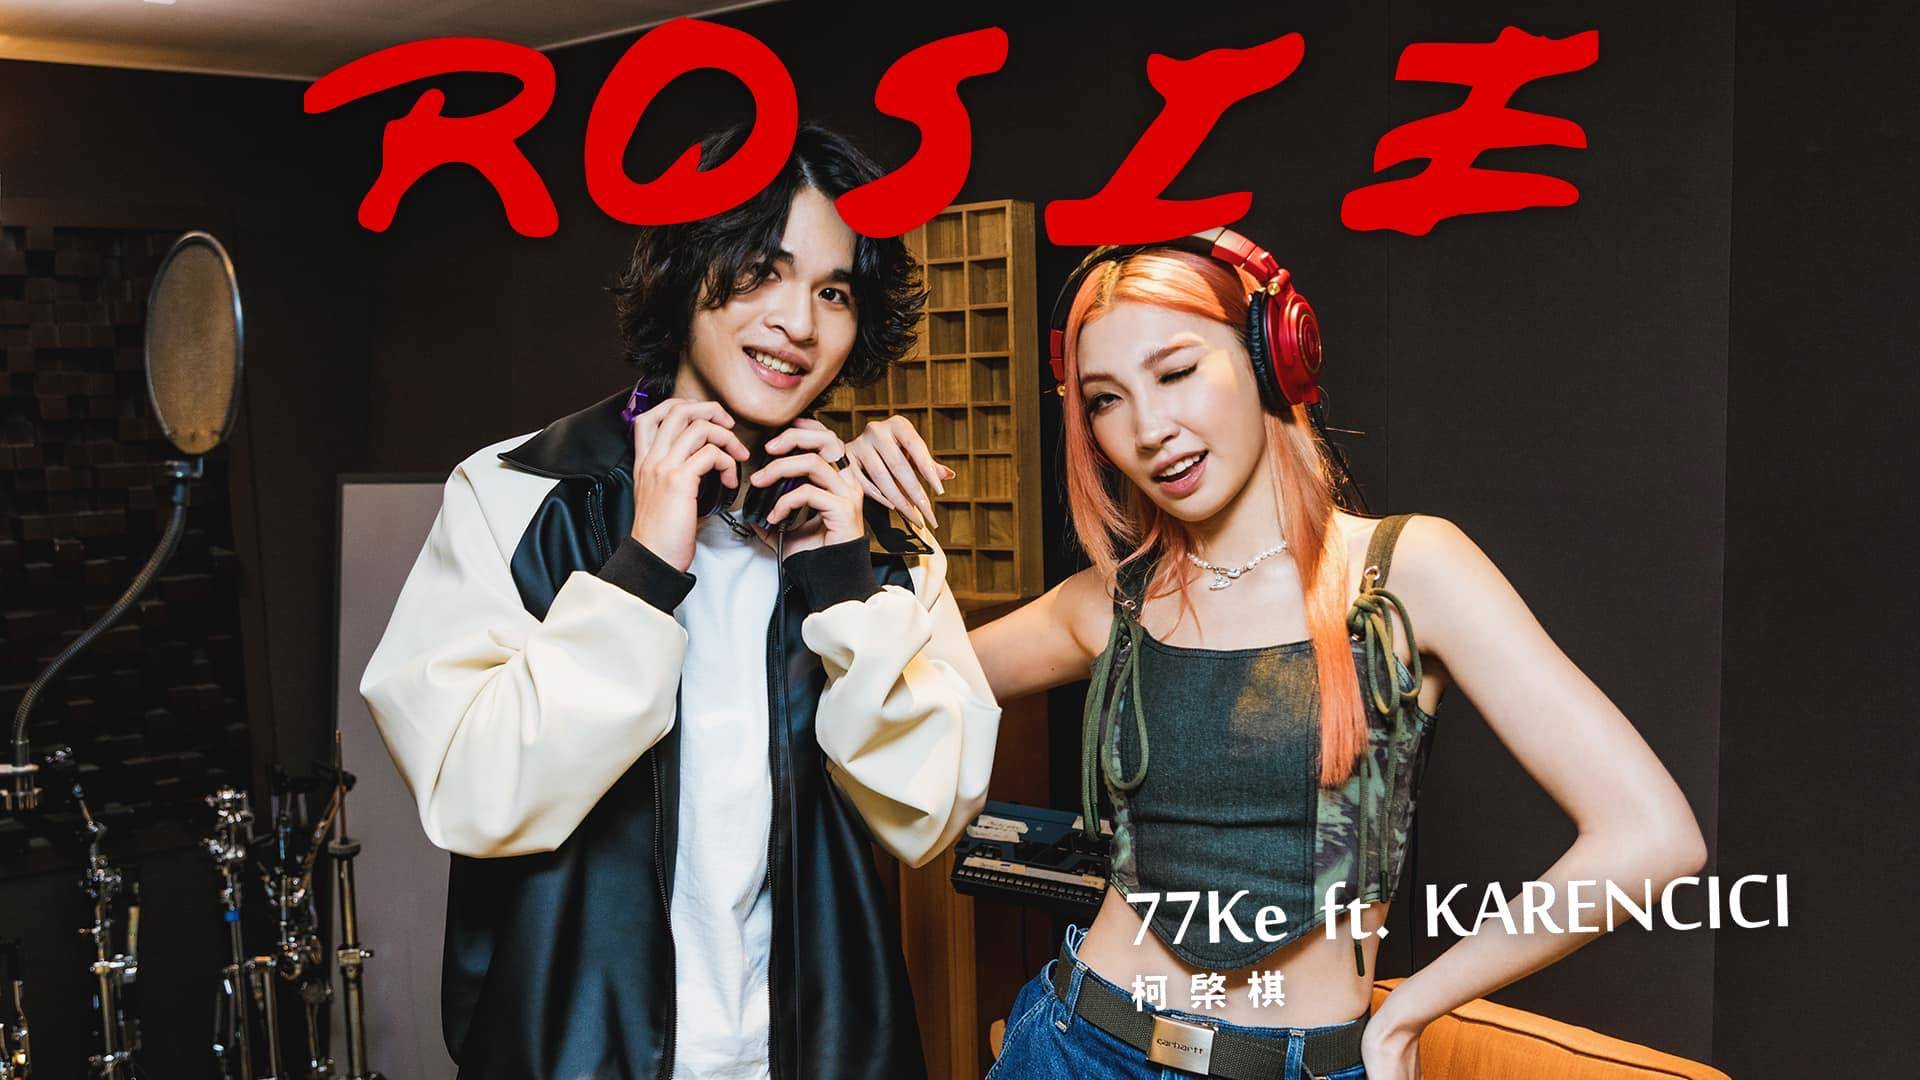 柯棨棋與師姐Karancici聯手打造情人節助攻神曲〈Rosie〉。